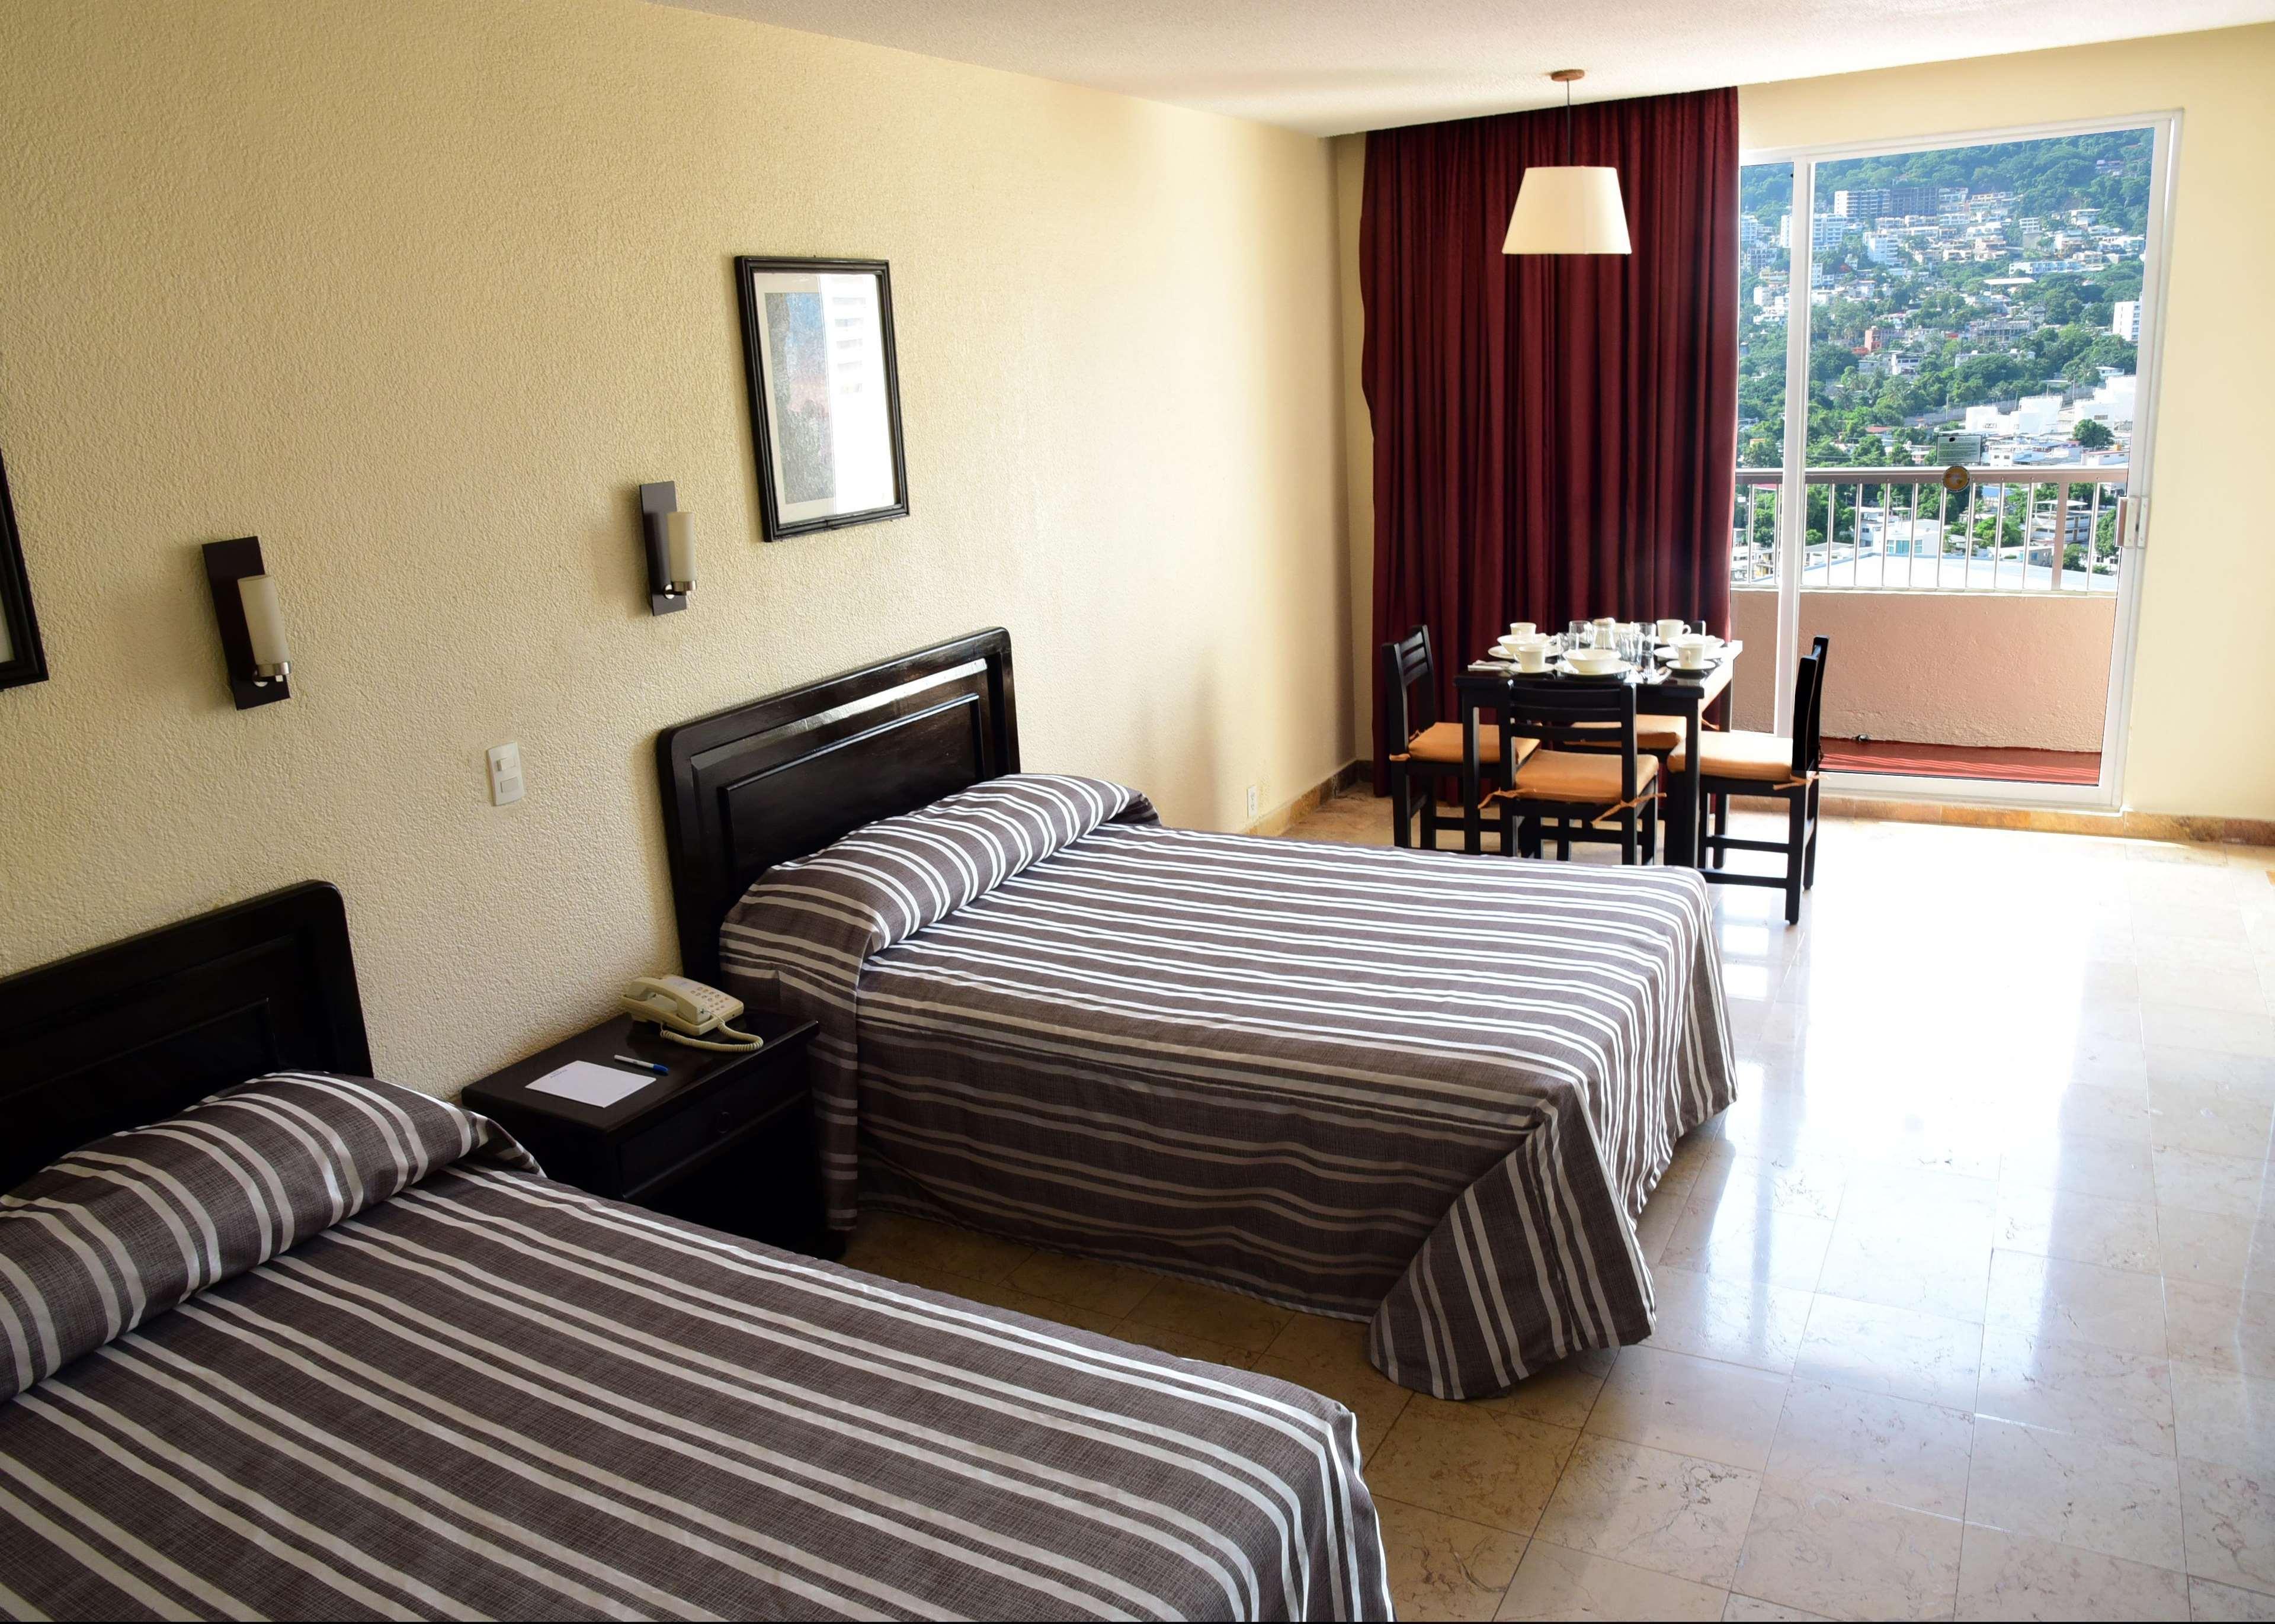 Amarea Hotel Acapulco Exterior photo